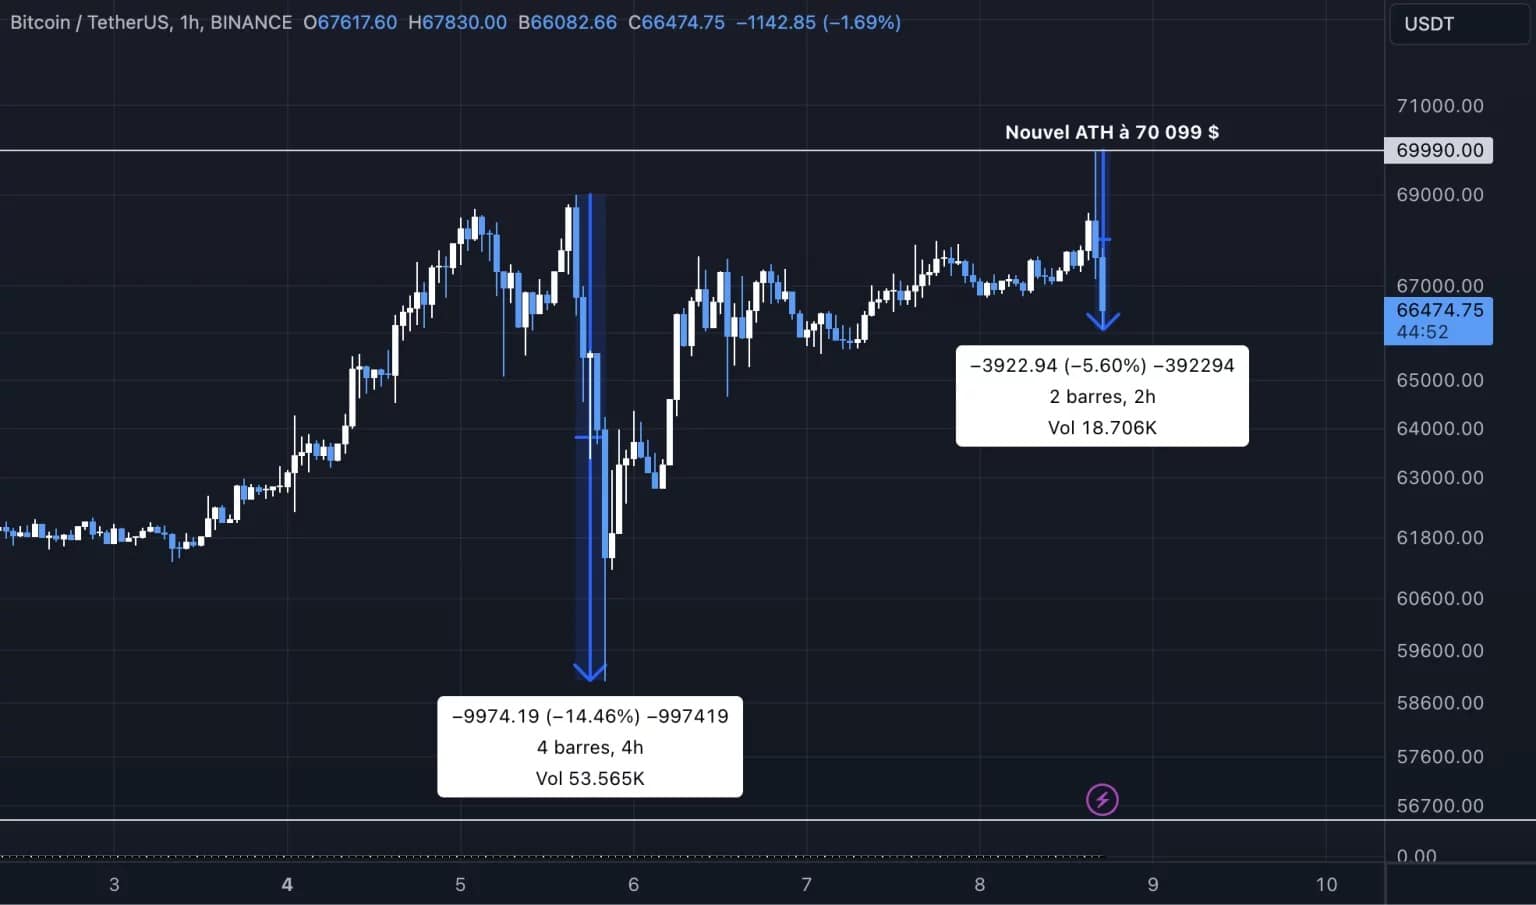 Vývoj ceny Bitcoinu (BTC) v časovém měřítku 1H